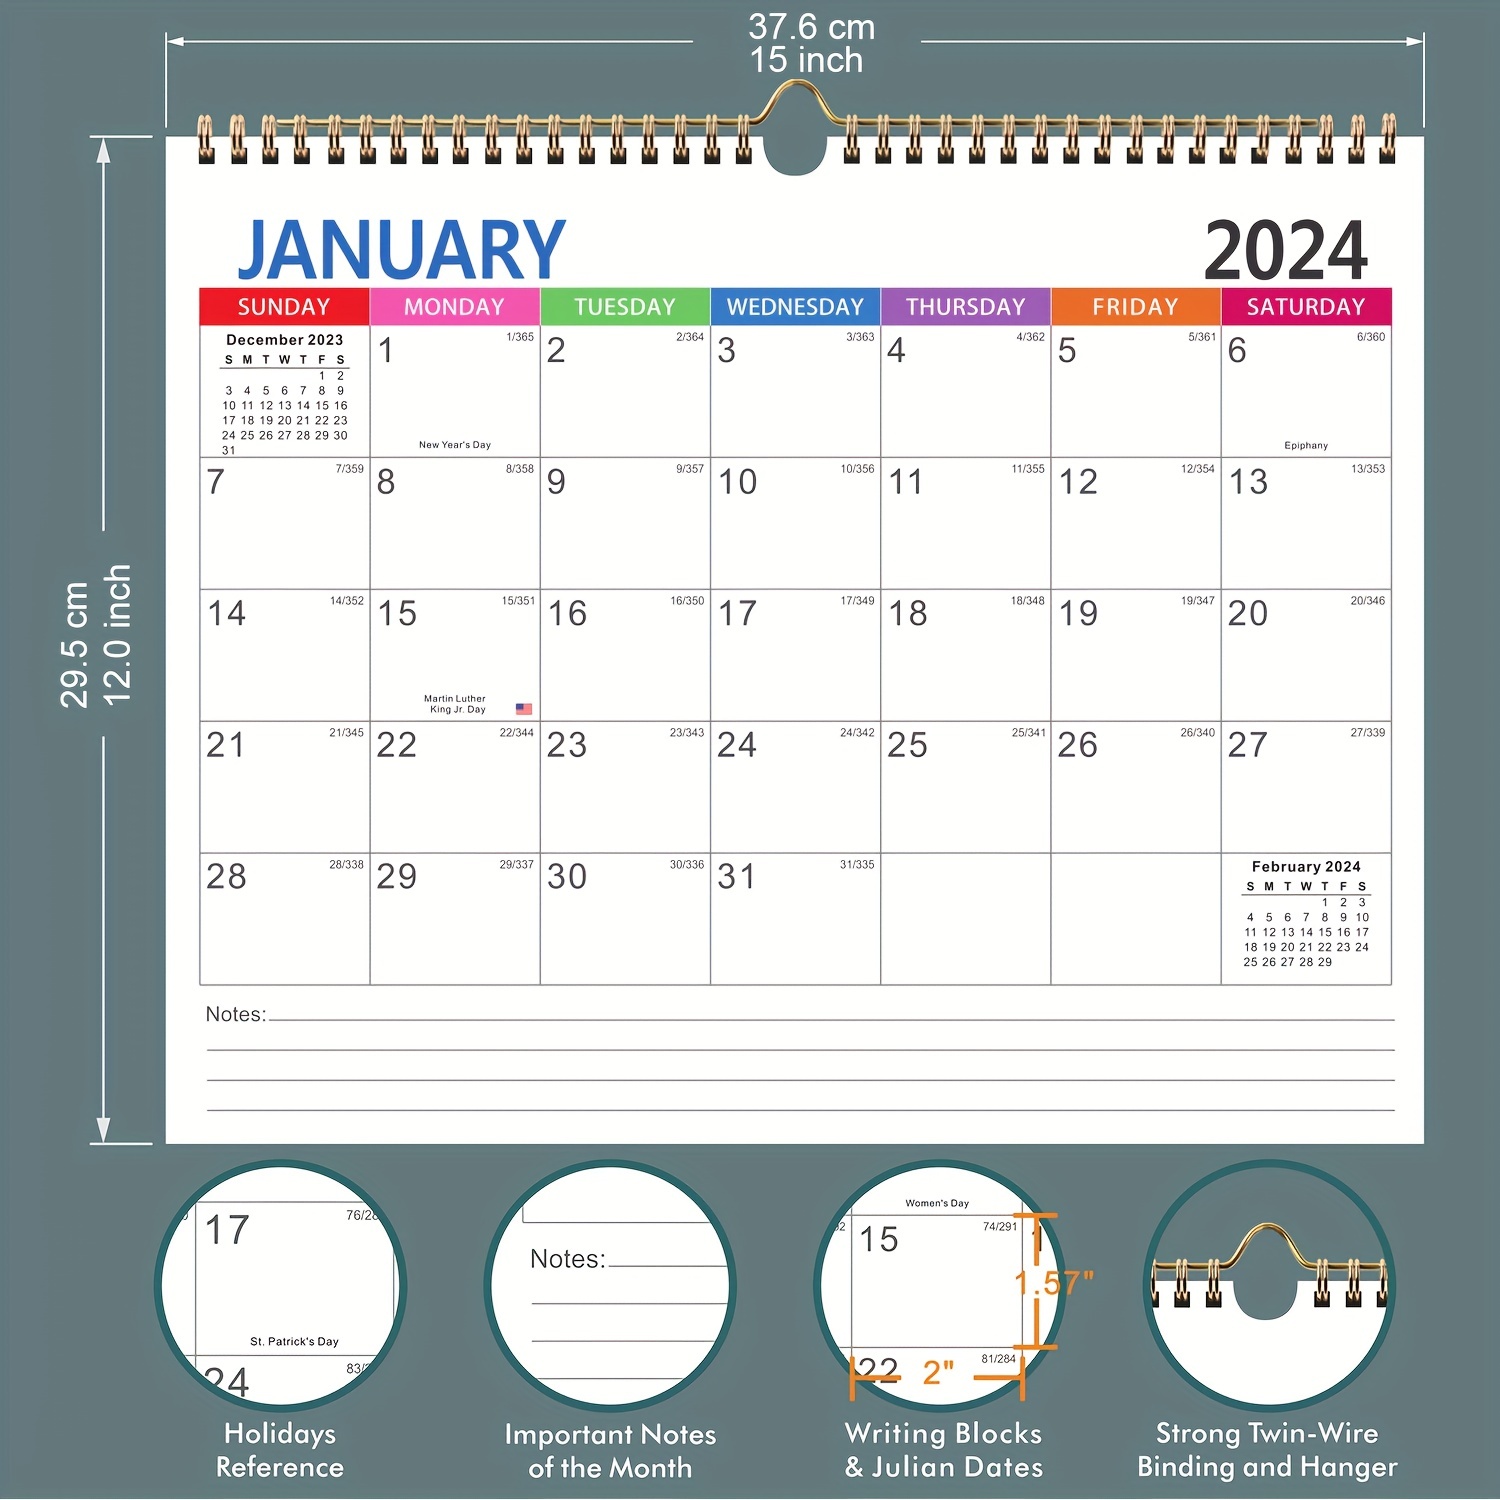 Acheter Un mois pour voir le calendrier mensuel 2024